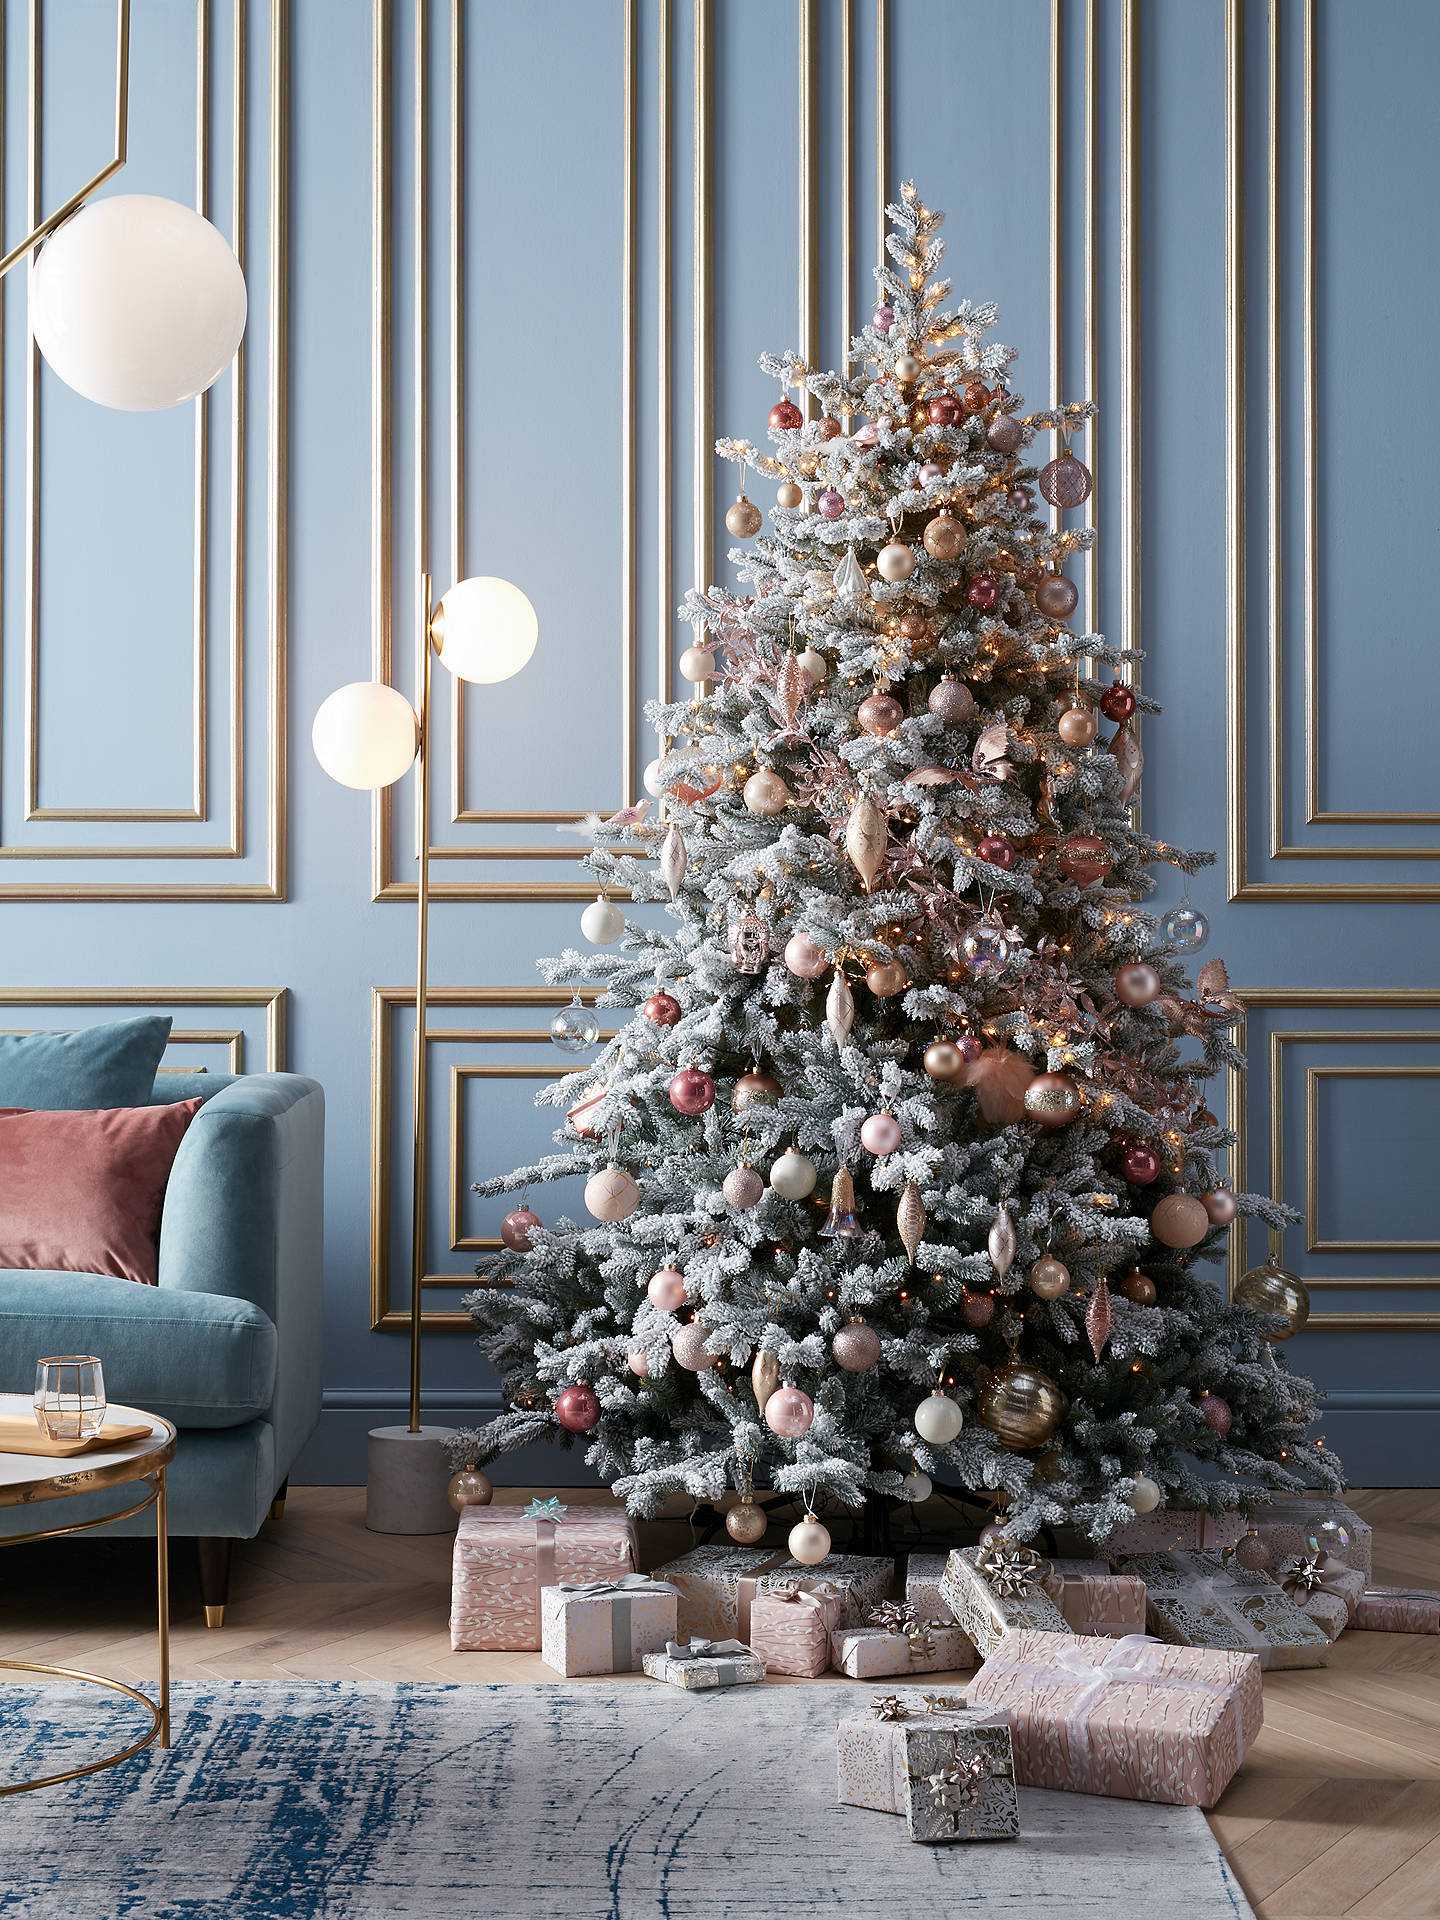 Немного истории Традиция украшения новогодней елки пришла к нам из Германии Согласно легенде, впервые, такая идея пришла на ум немецкому реформатору